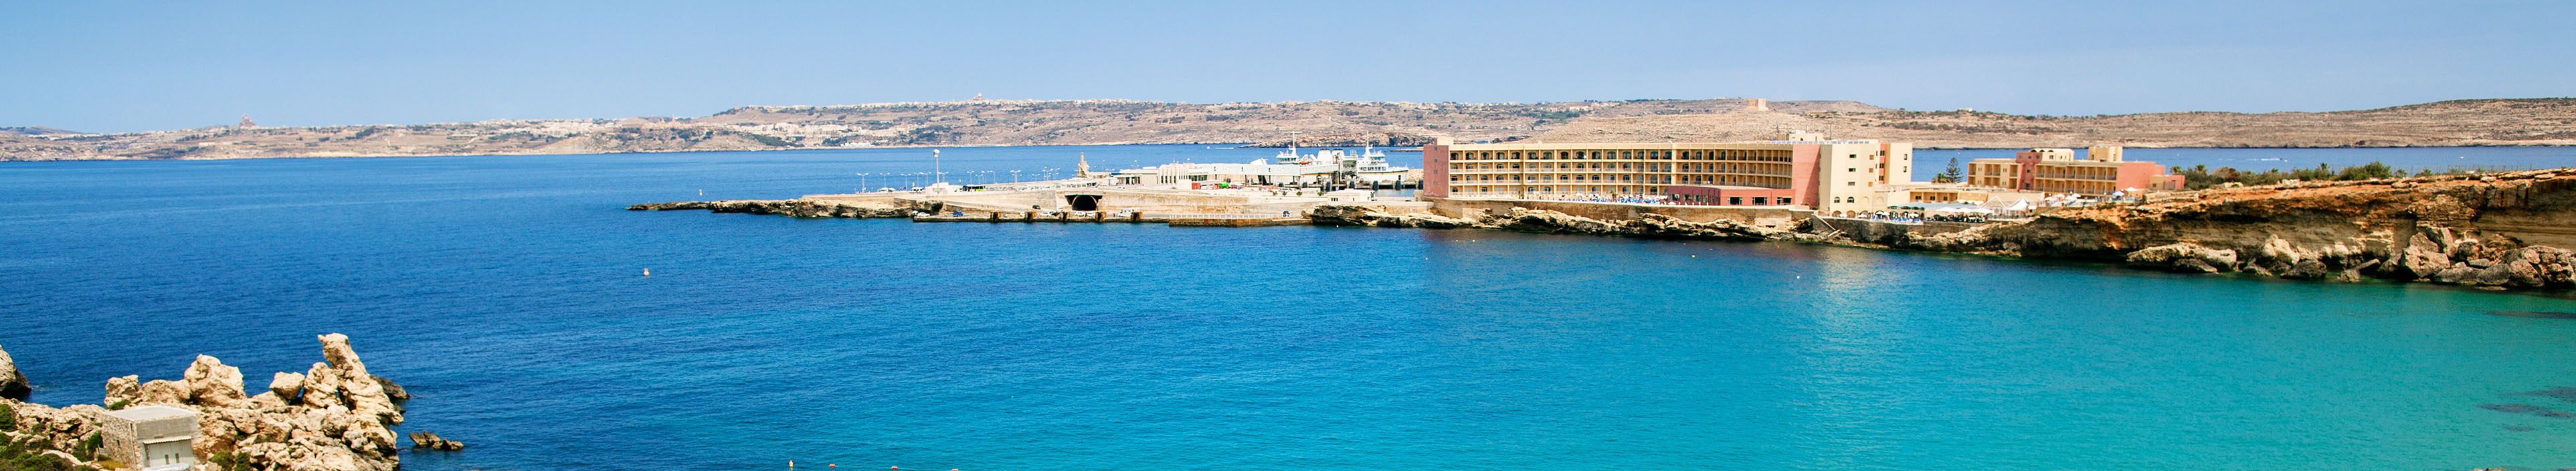 Strand auf Malta mit Sonnenschirmen